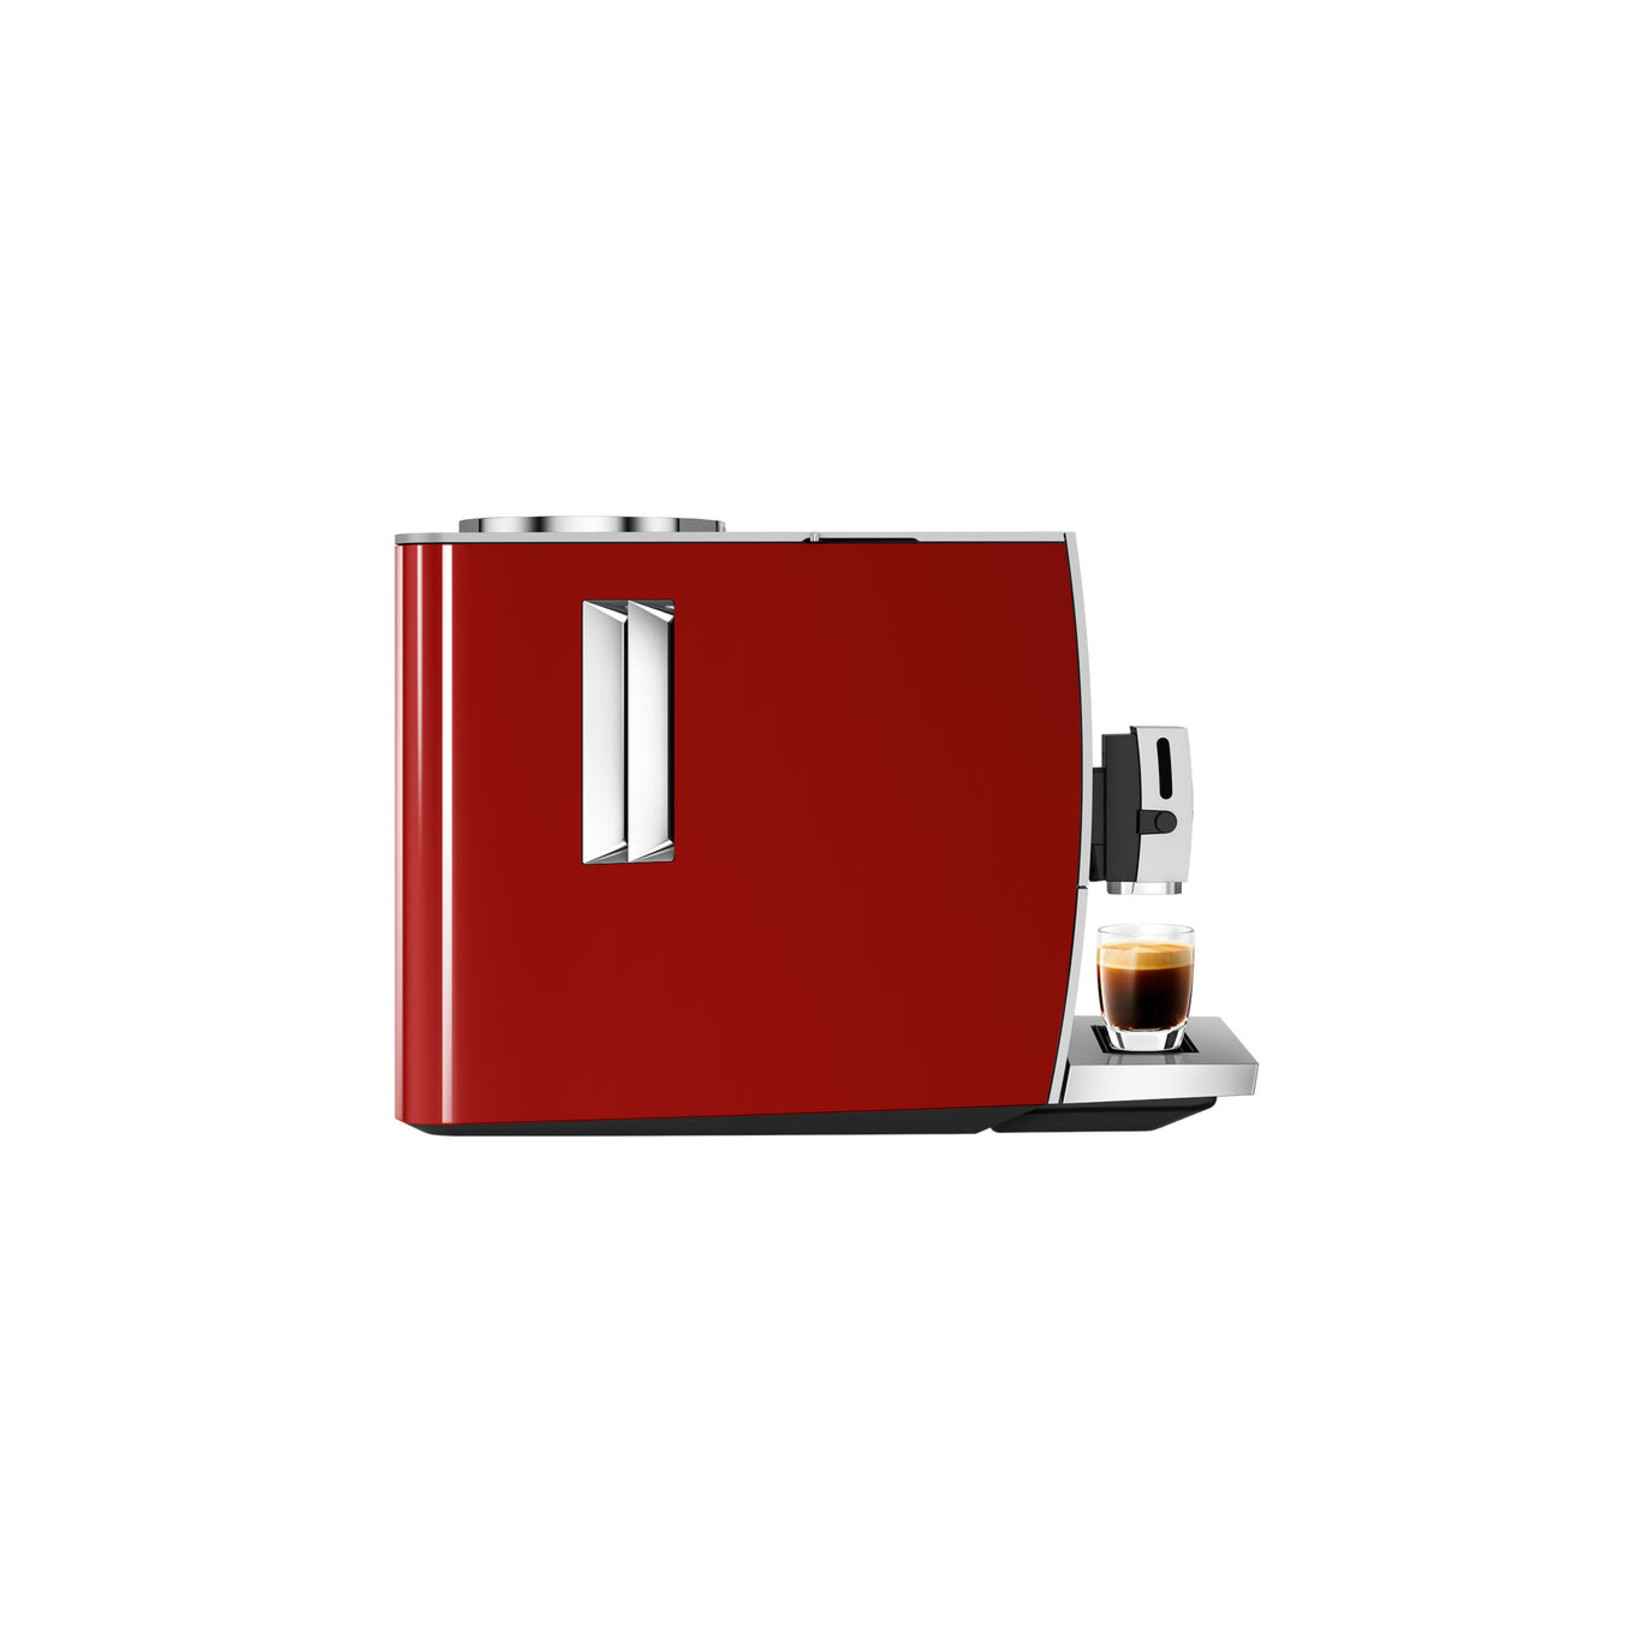 JURA Espresso auto ENA 8 rouge sunset (disponible en commande spéciale)